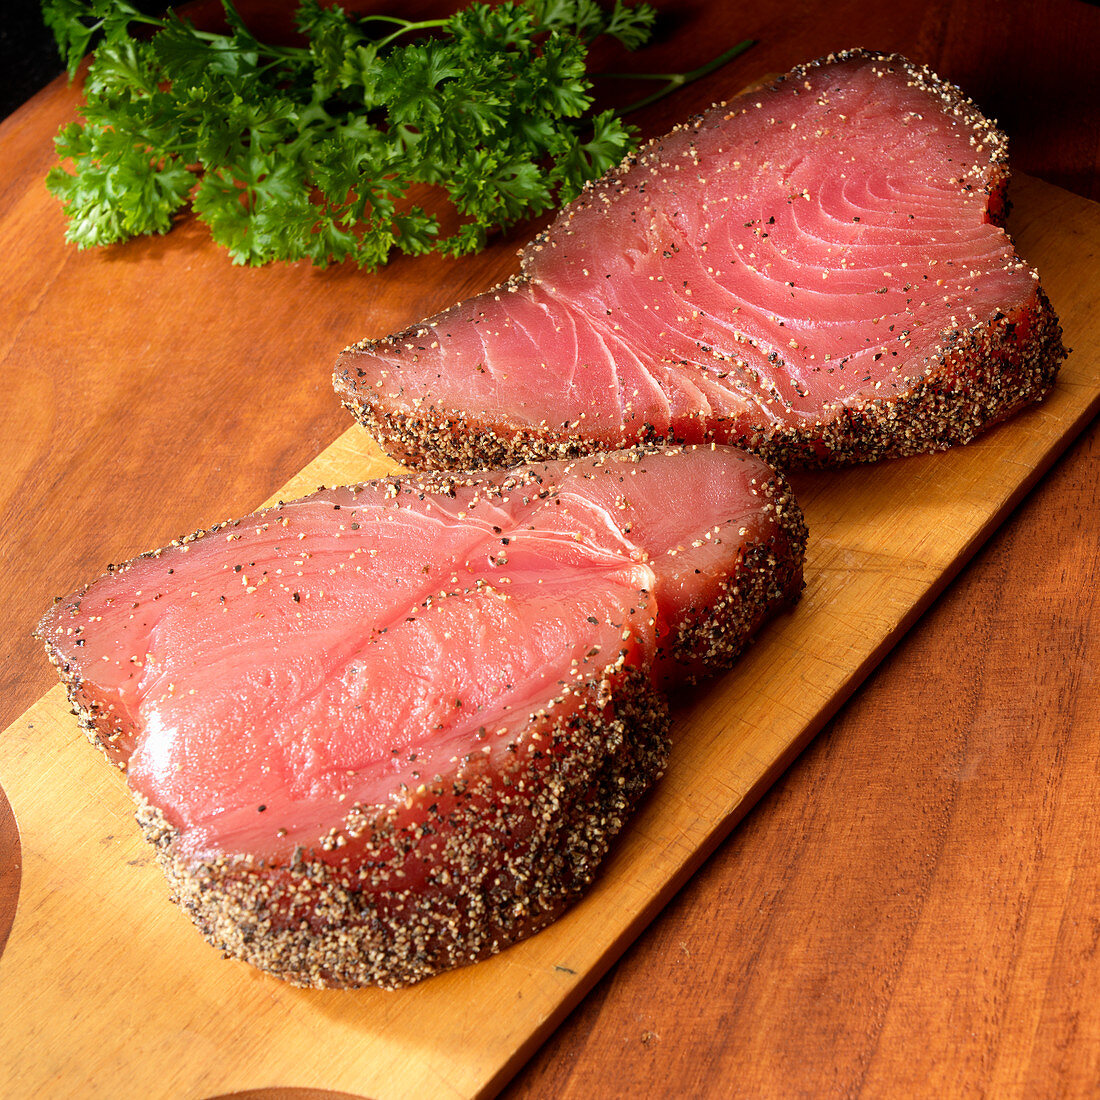 Two tuna steaks with black pepper coating